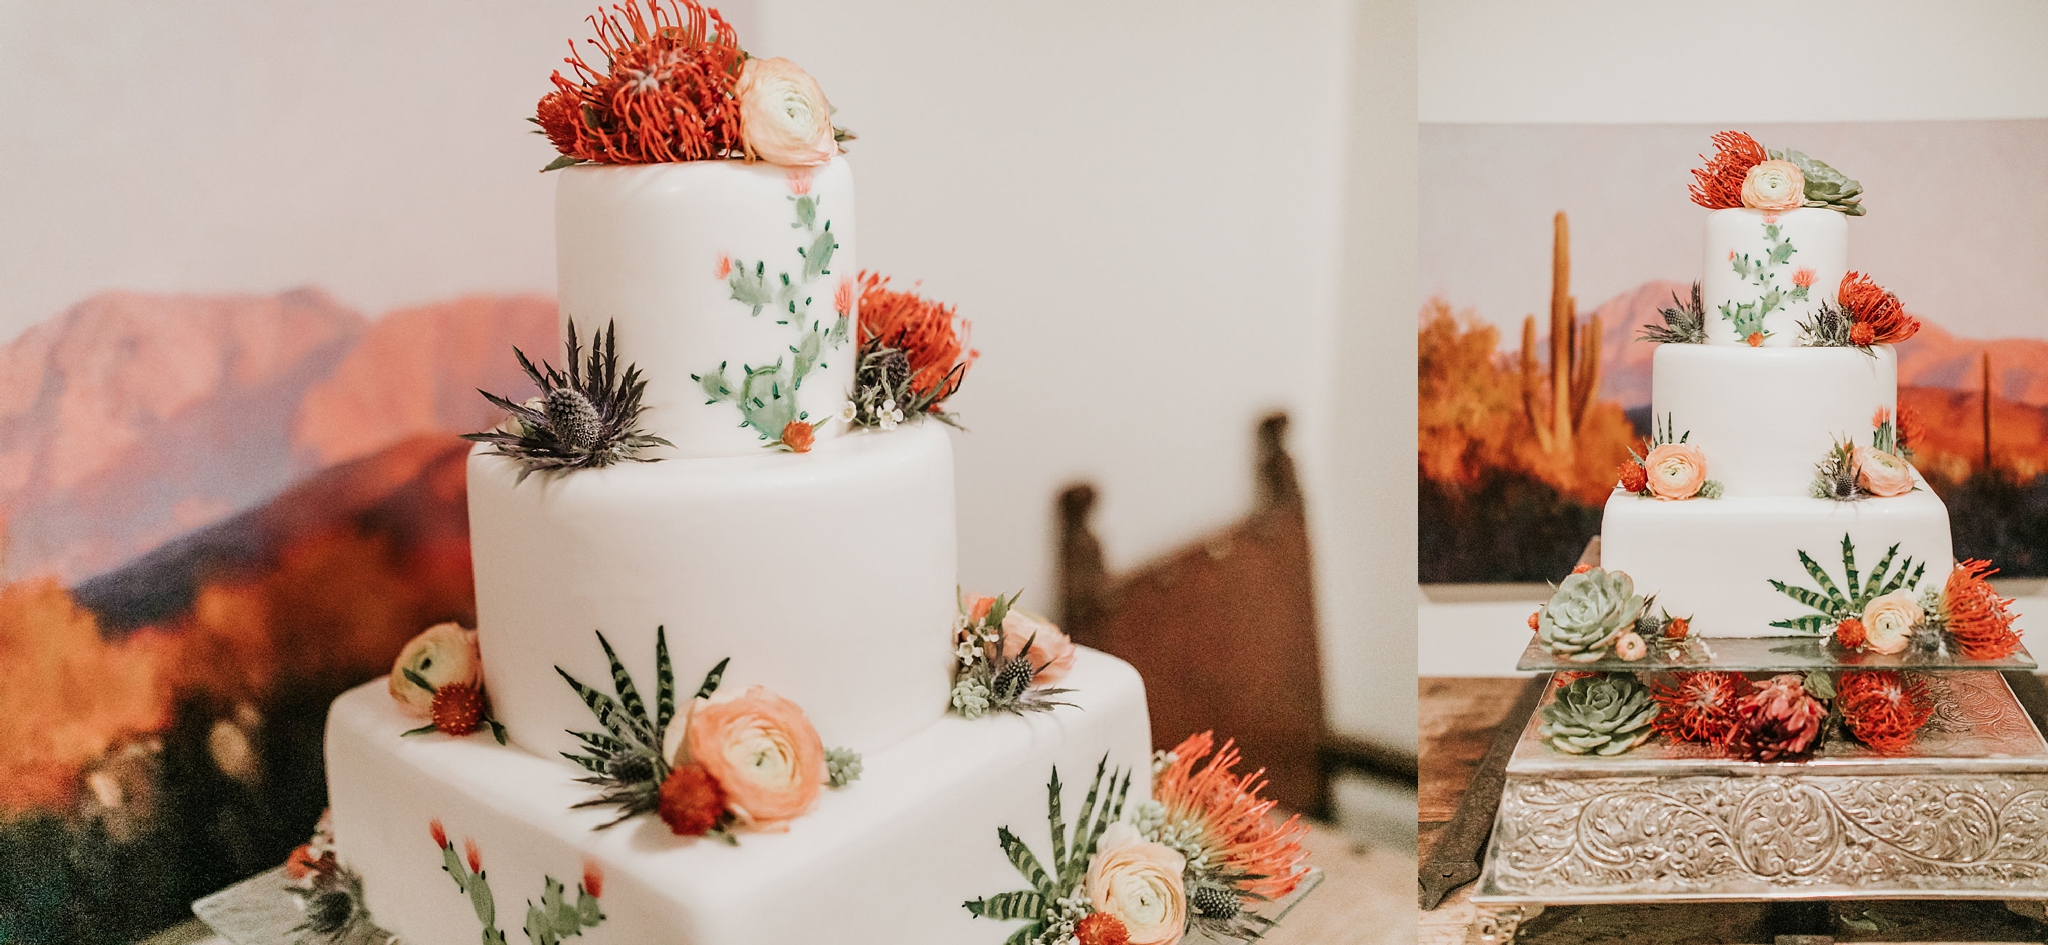 Alicia+lucia+photography+-+albuquerque+wedding+photographer+-+santa+fe+wedding+photography+-+new+mexico+wedding+photographer+-+wedding+reception+-+wedding+cake+-+wedding+sweets+-+maggies+cakes_0002.jpg